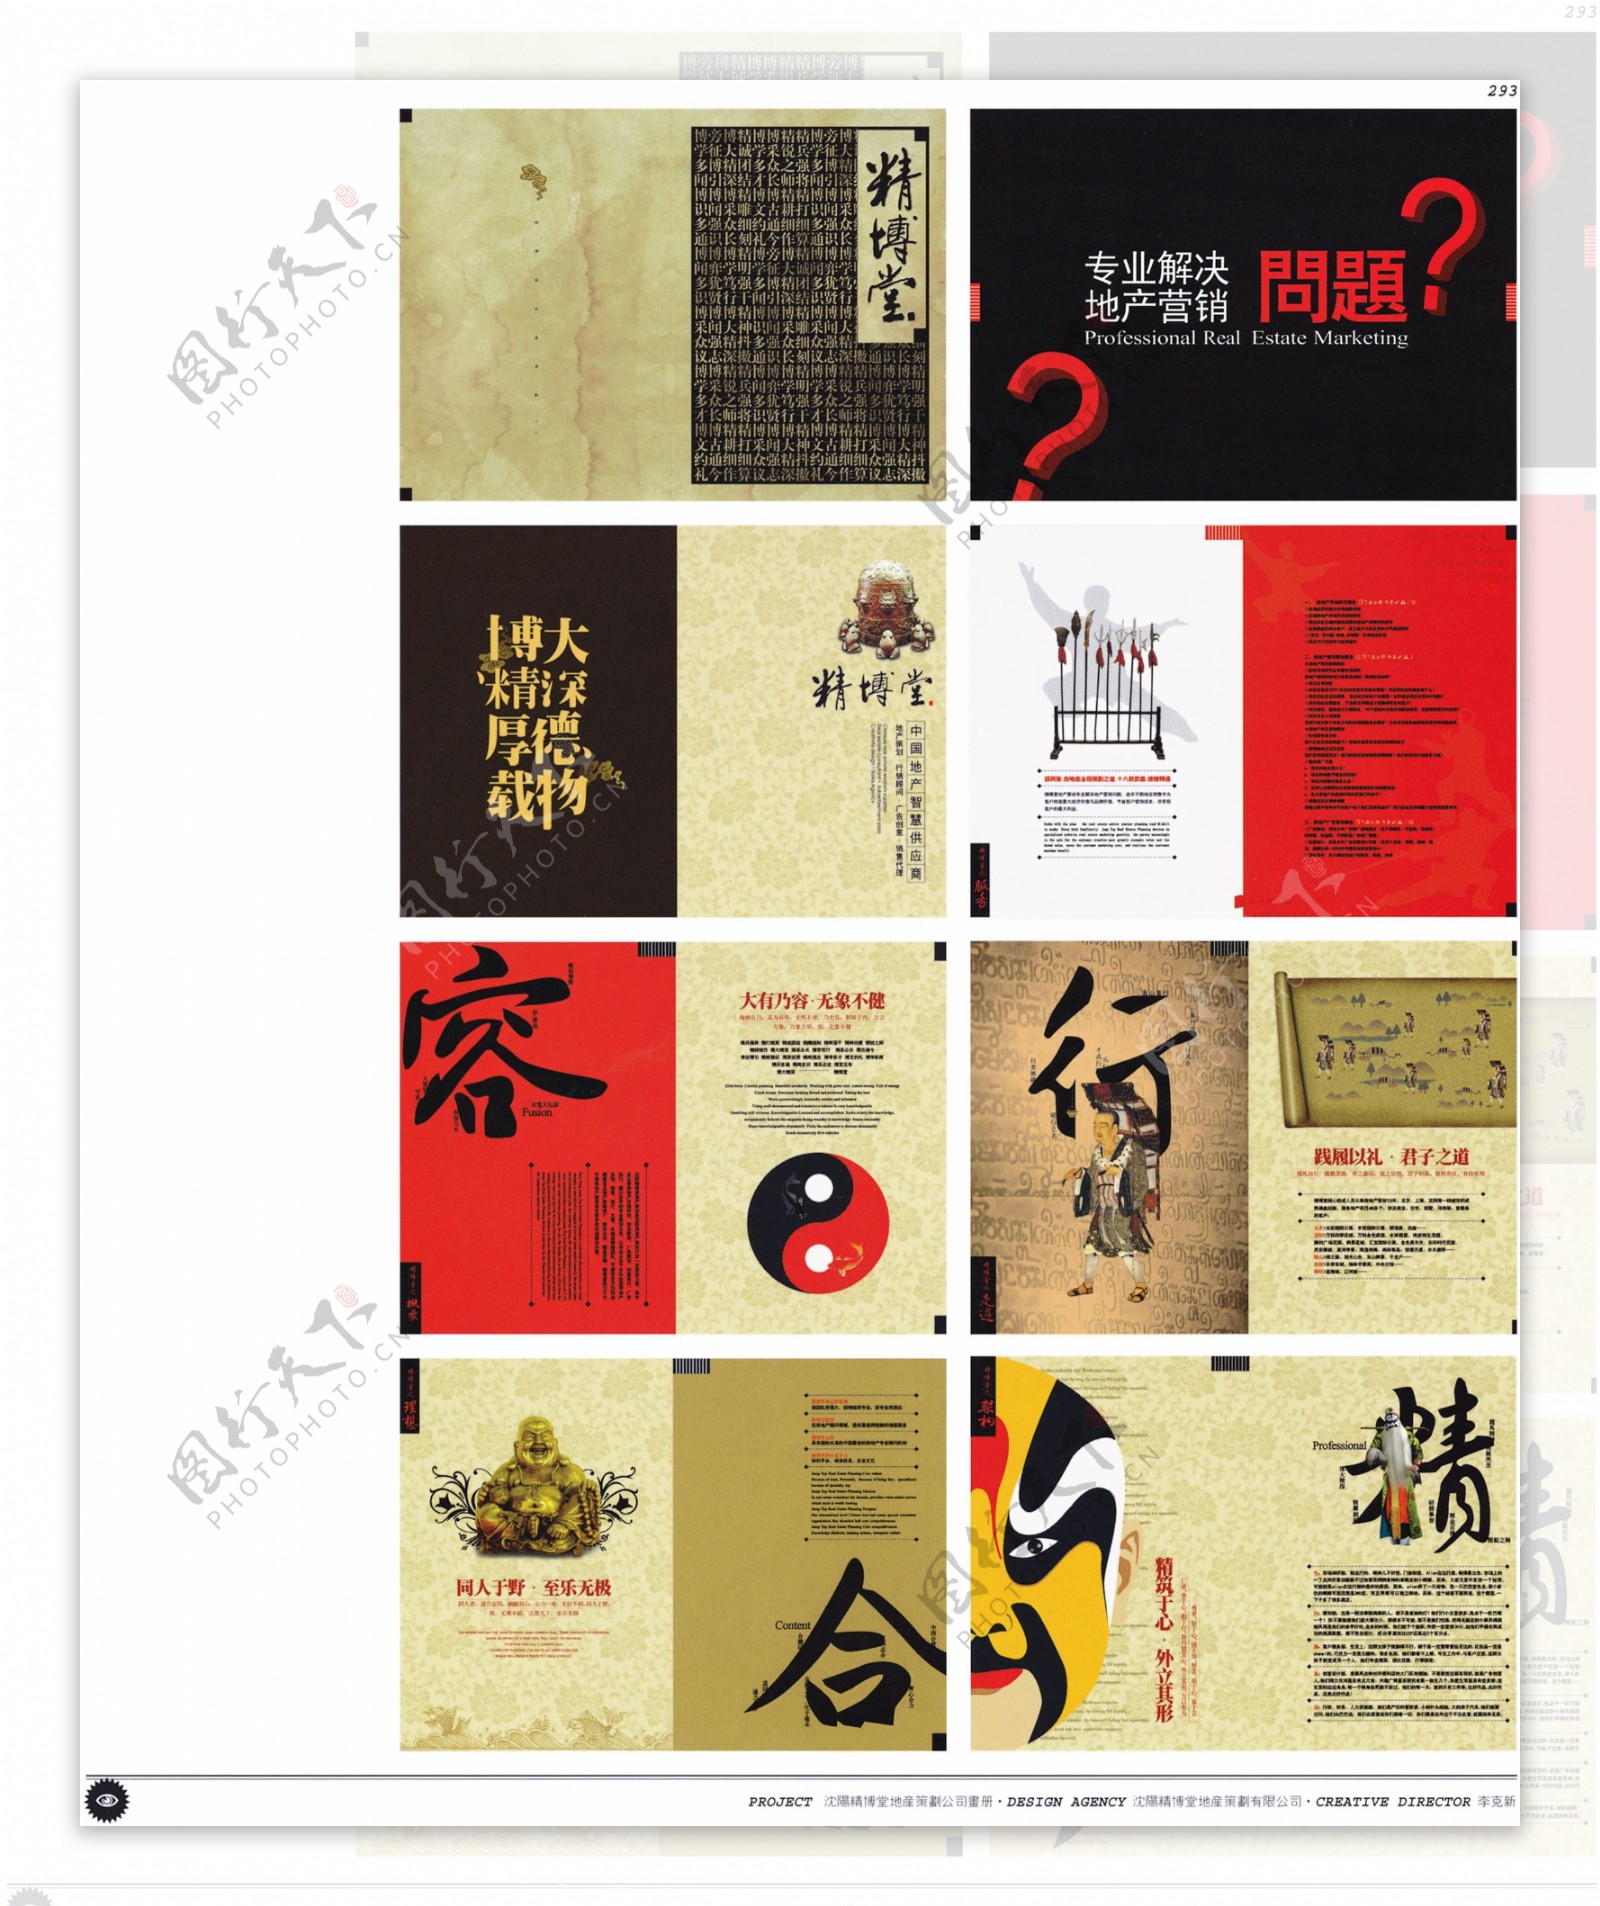 中国房地产广告年鉴第二册创意设计0288